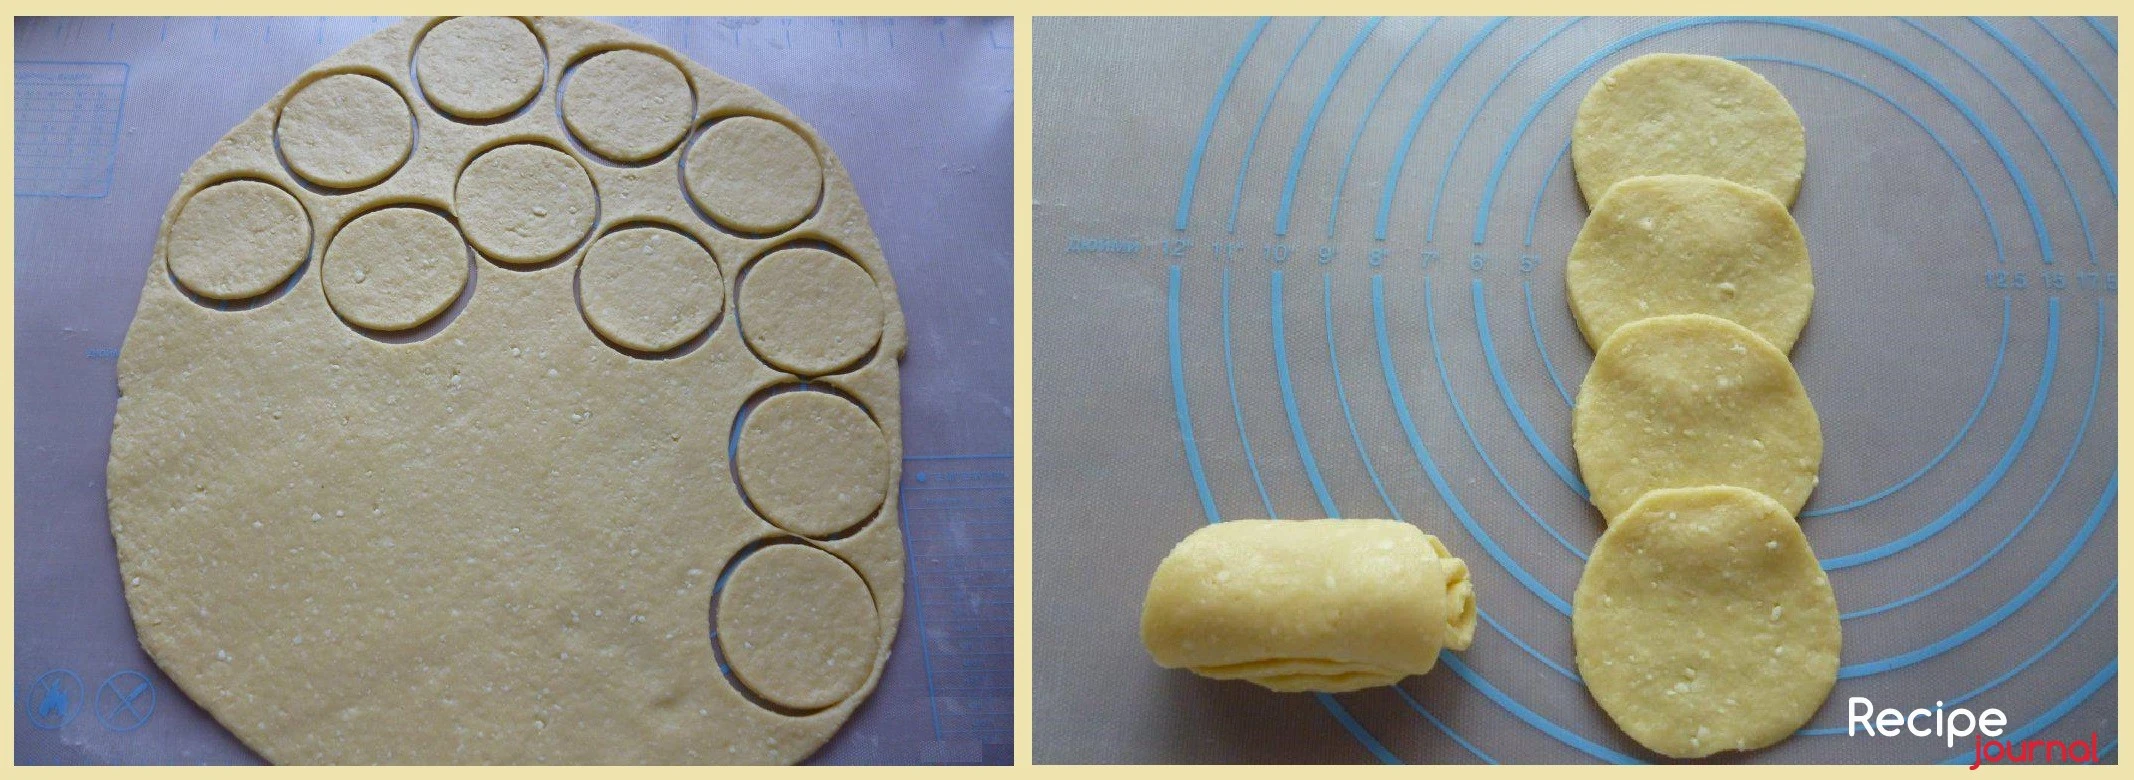 Раскатываем охлажденное тесто в пласт толщиной 2 мм и вырезаем печенья с помощью круглой формы или стакана. Теперь формируем печенья. Выкладываем по четыре кружка внахлест.